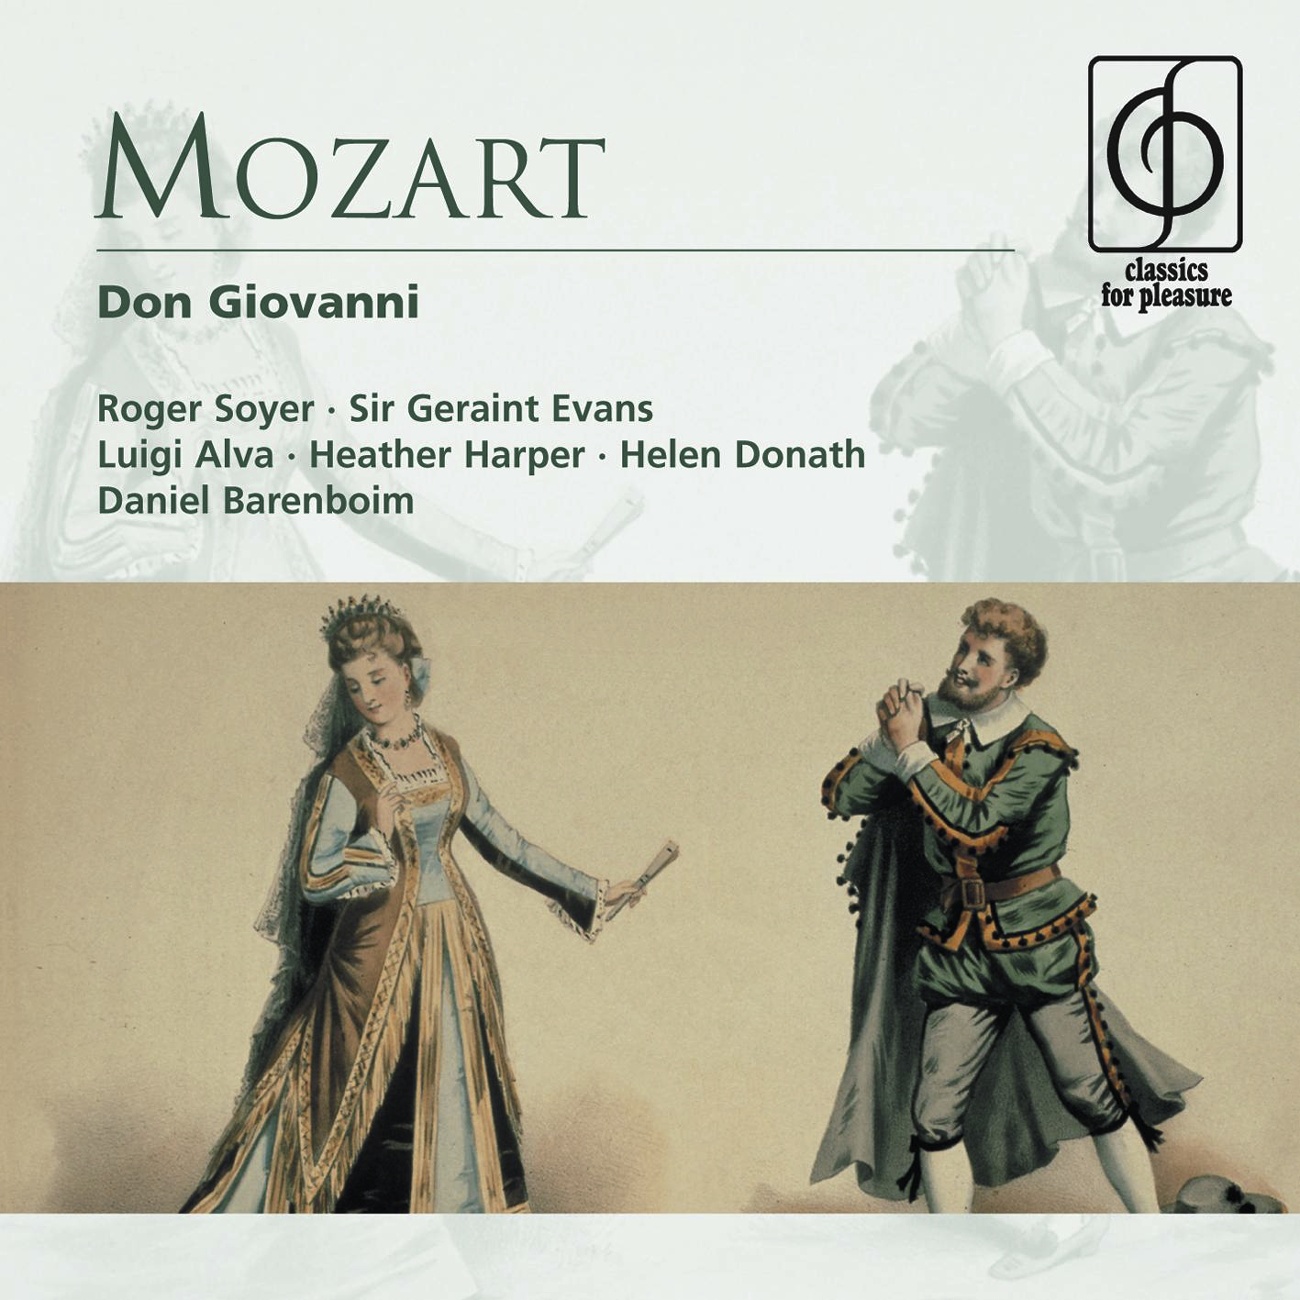 Don Giovanni - Opera in two acts K527 (1991 Digital Remaster), Appendix: Dalla sua pace (Don Ottavio)